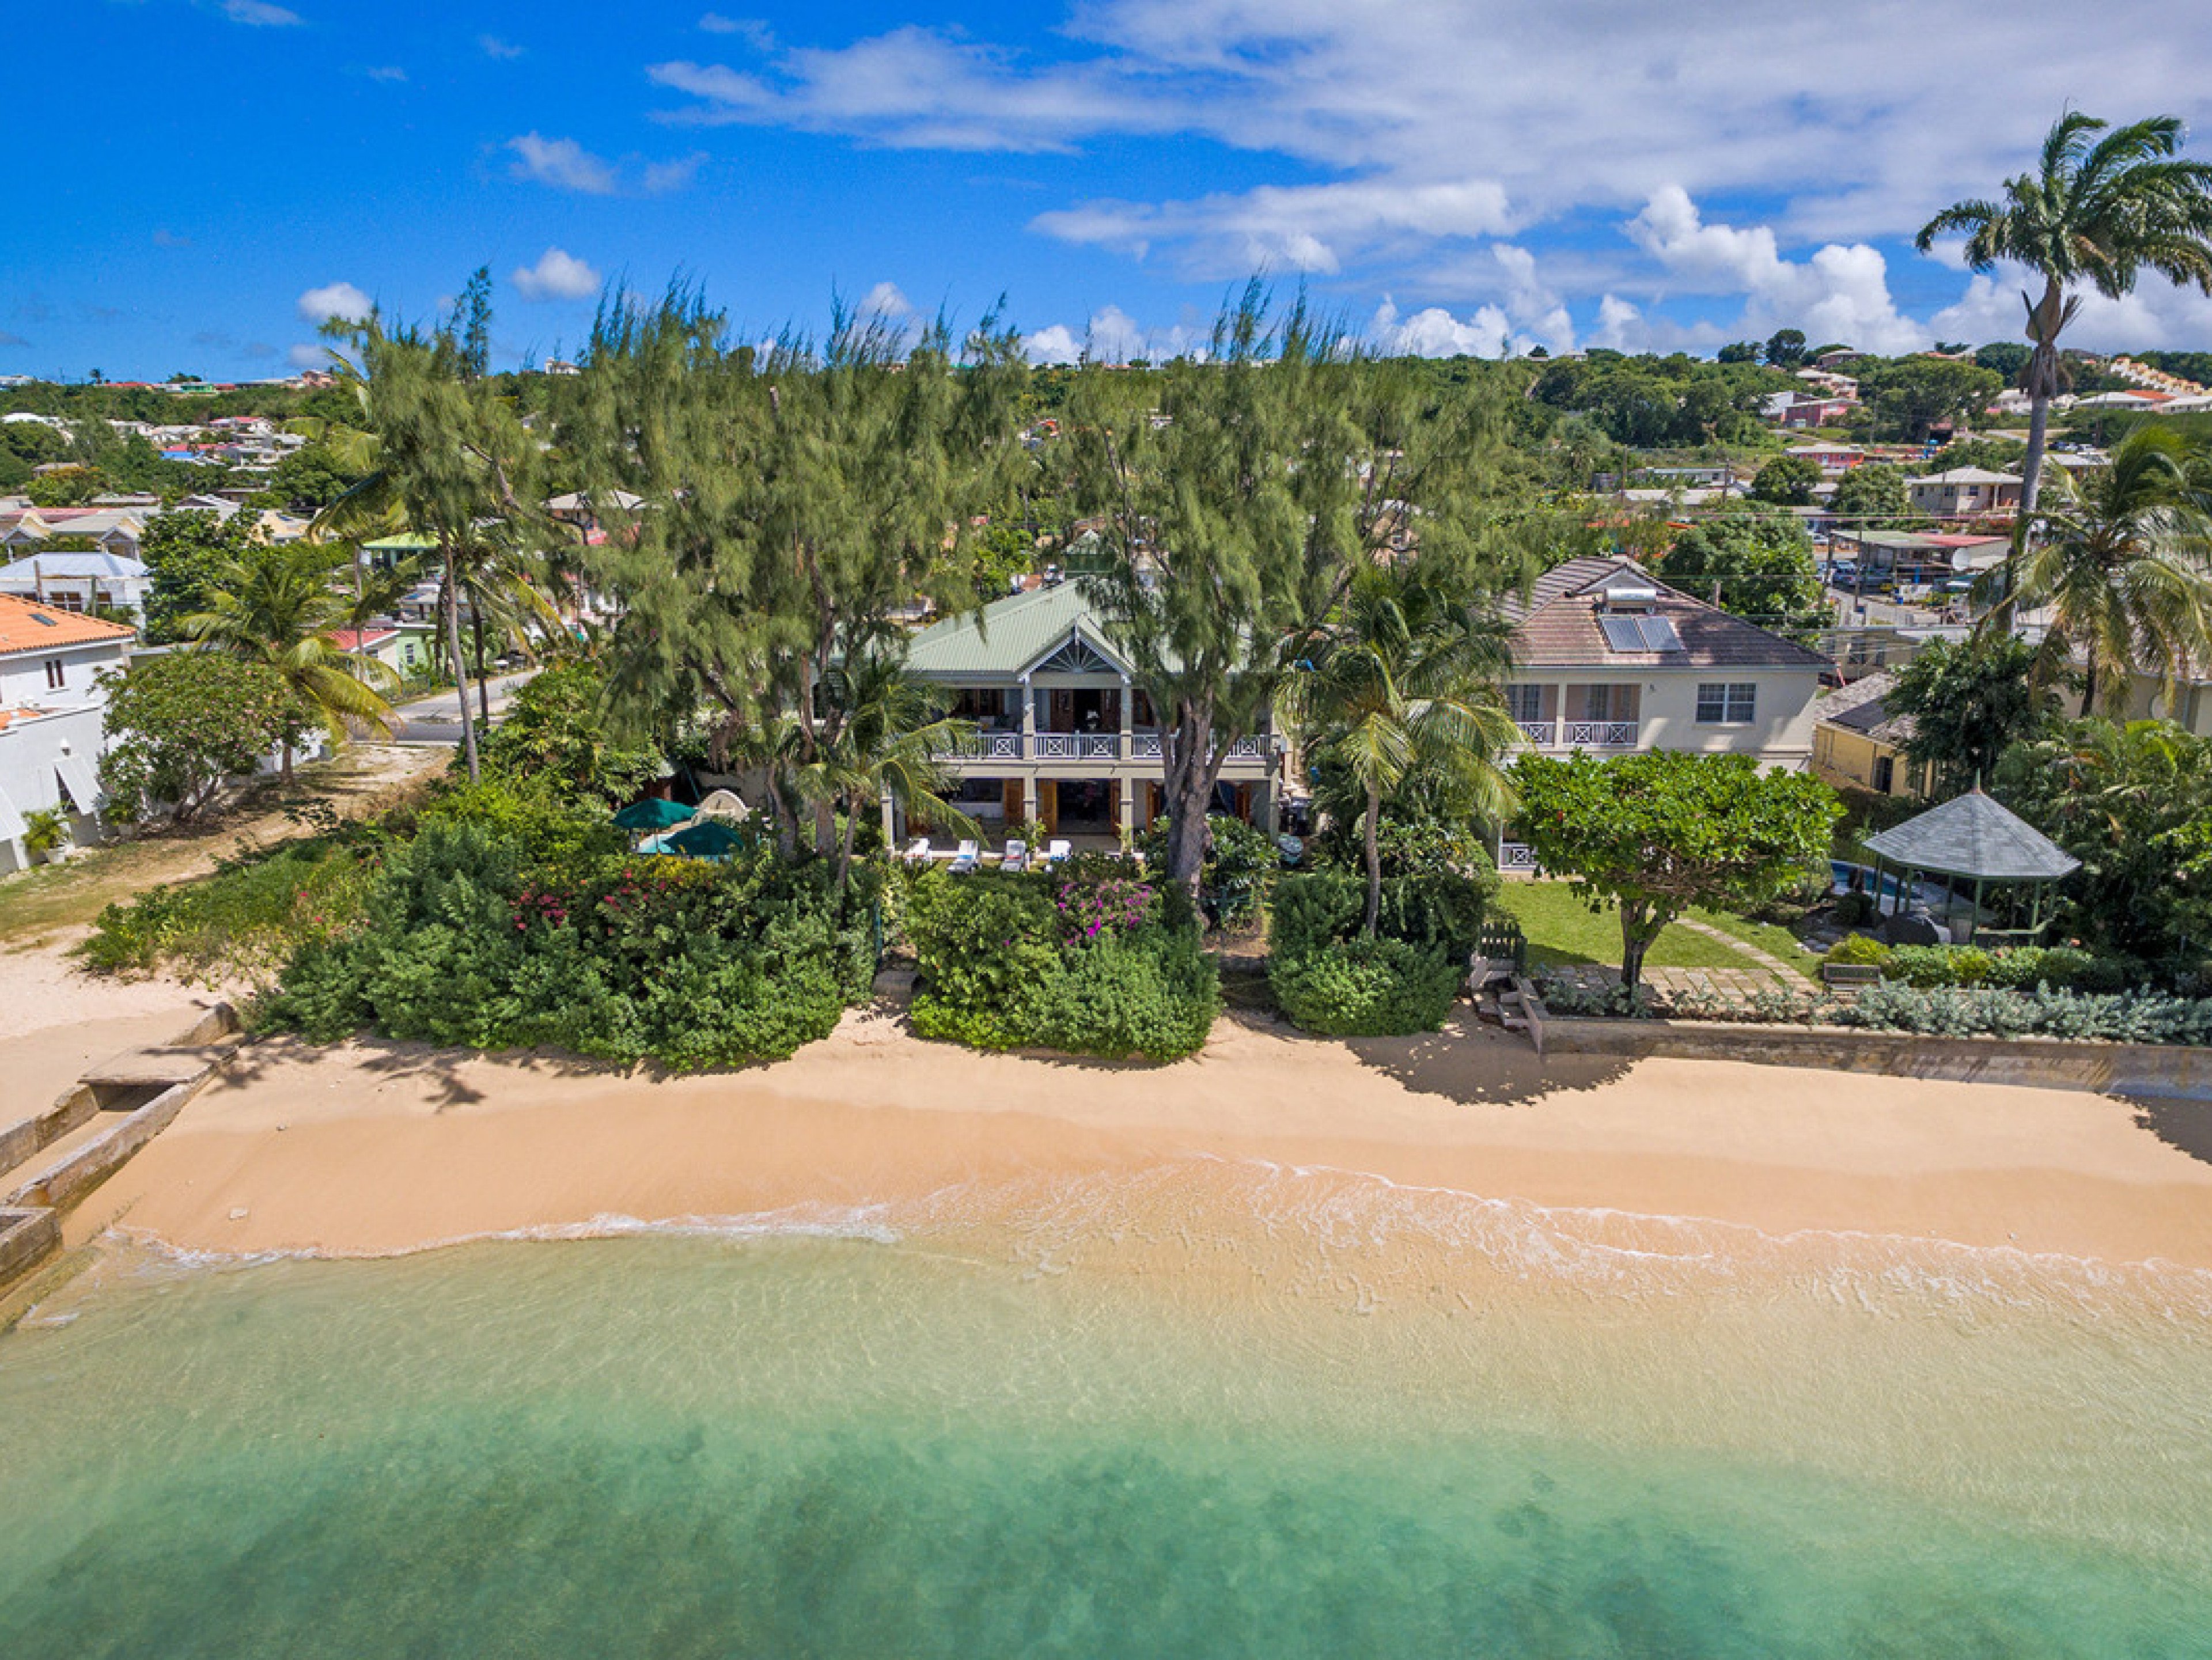 La Paloma Barbados beachfront villas